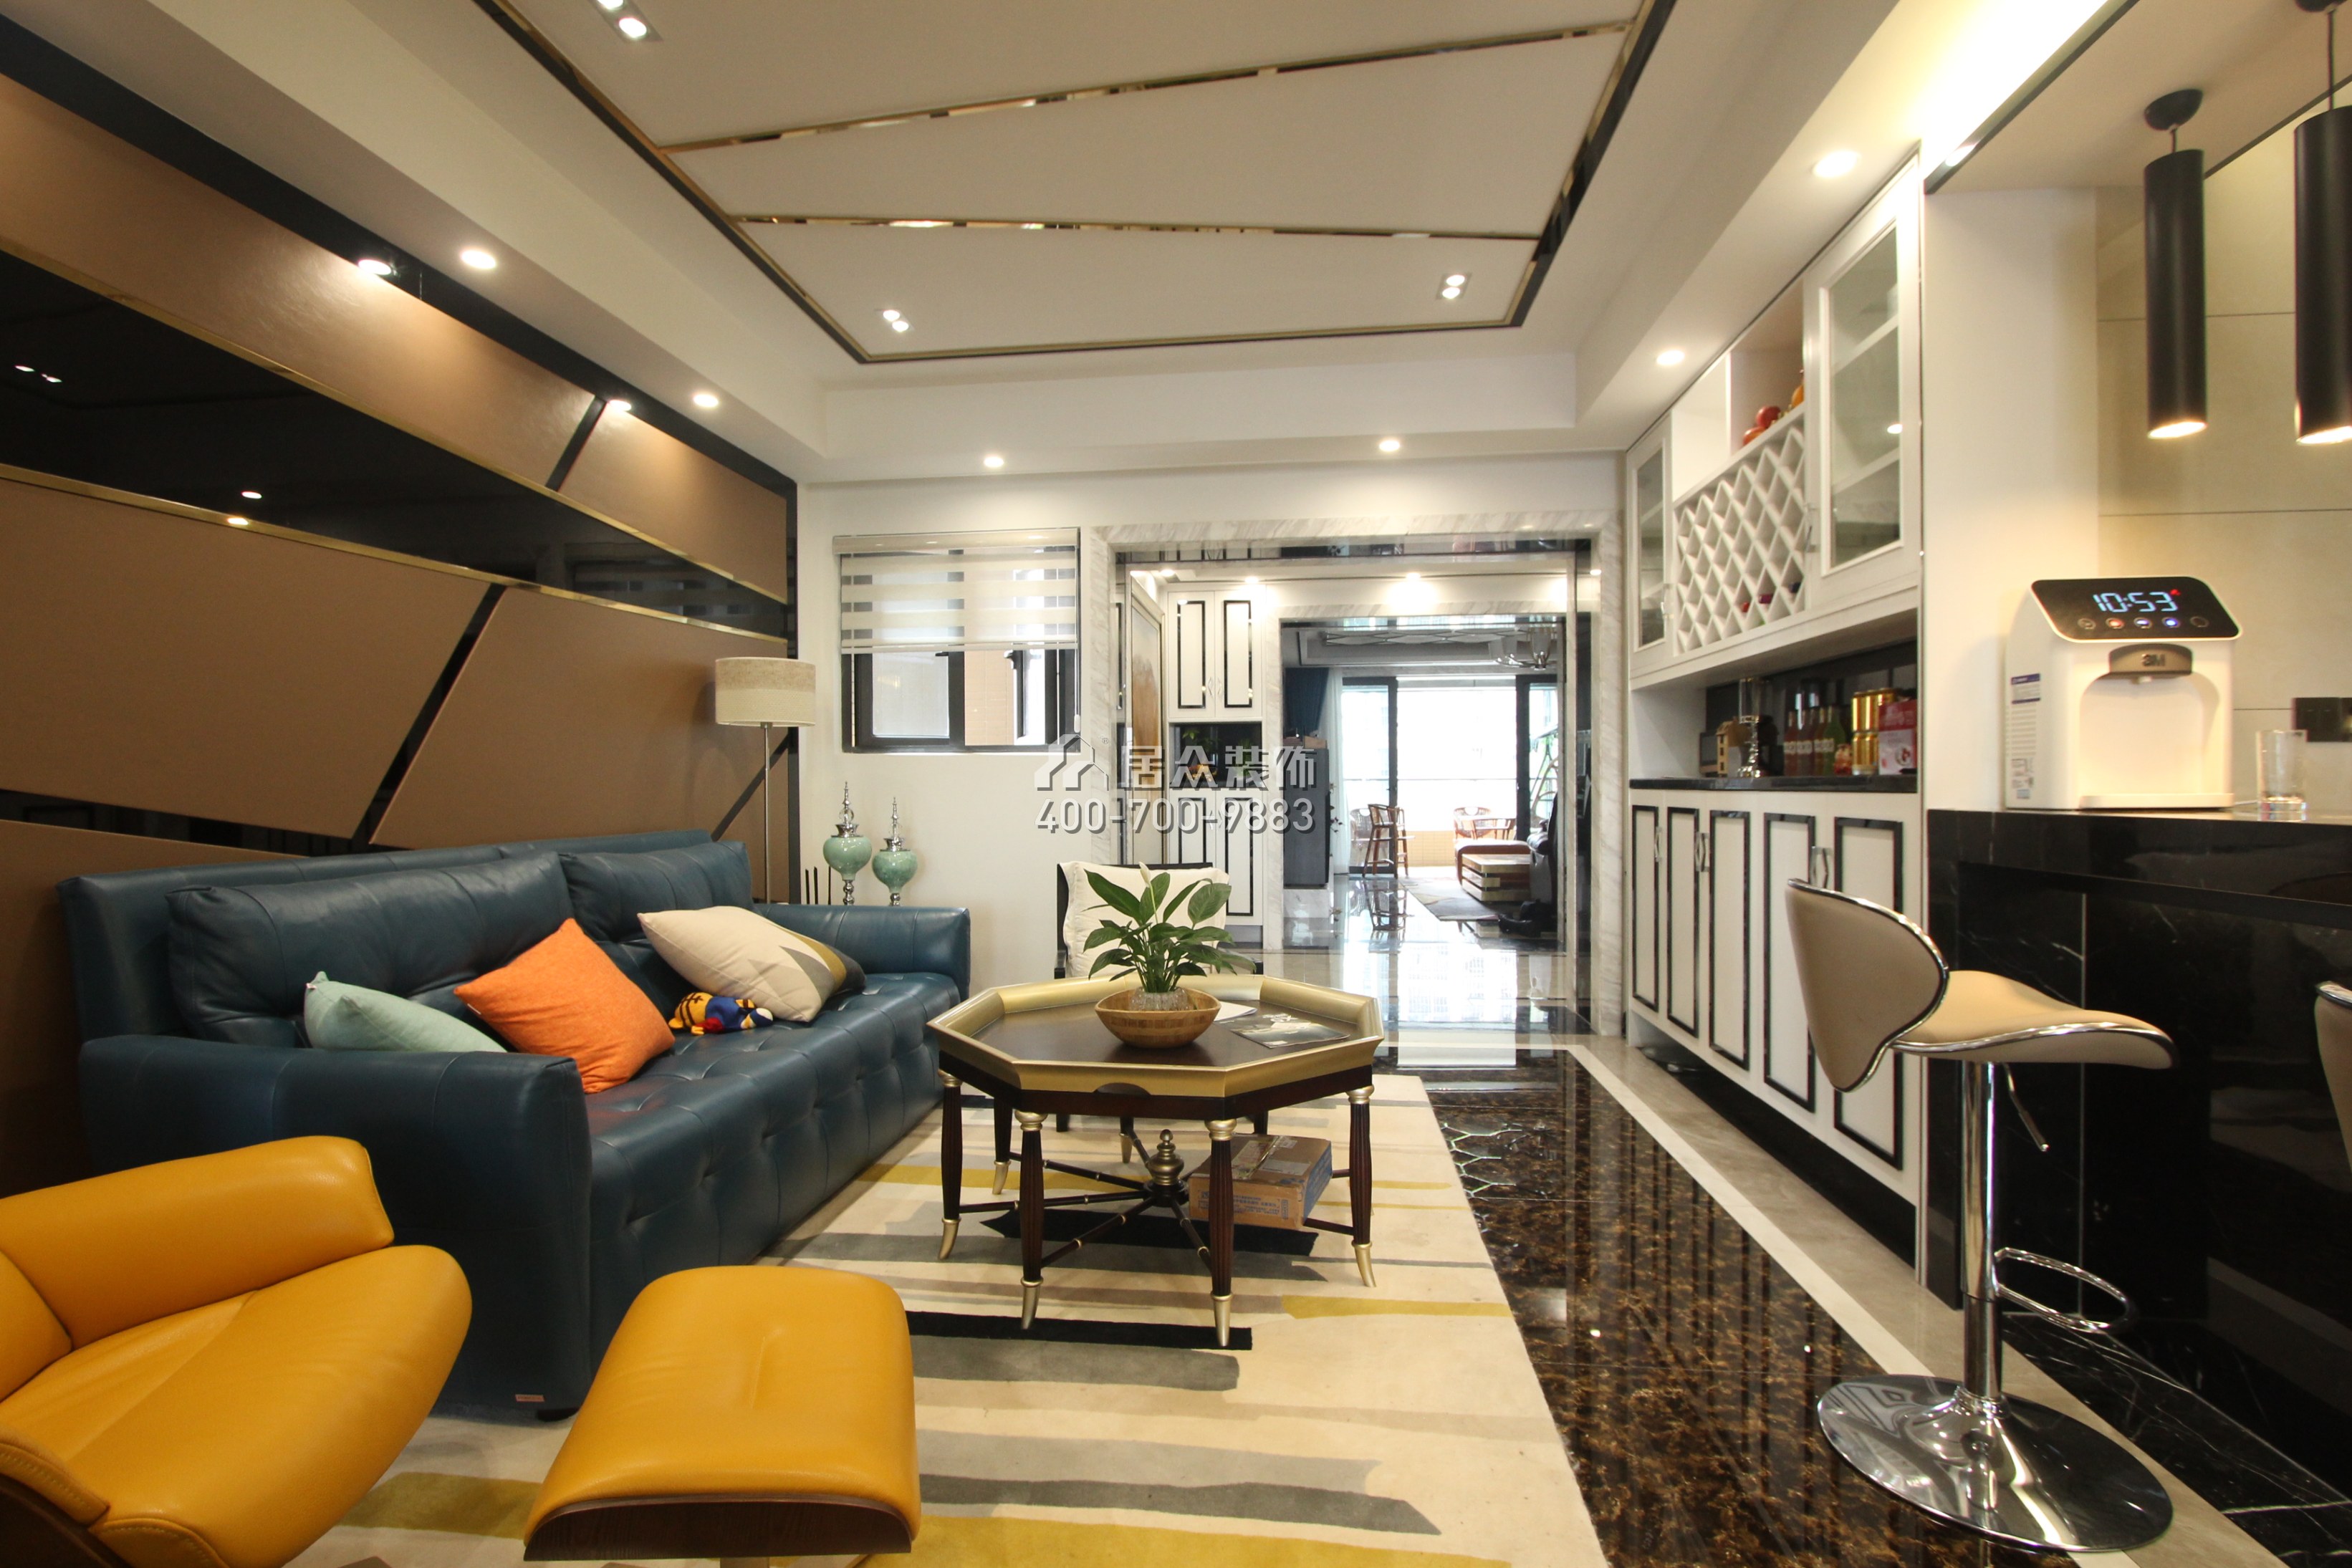 中洲中央公园270平方米现代简约风格平层户型客厅装修效果图